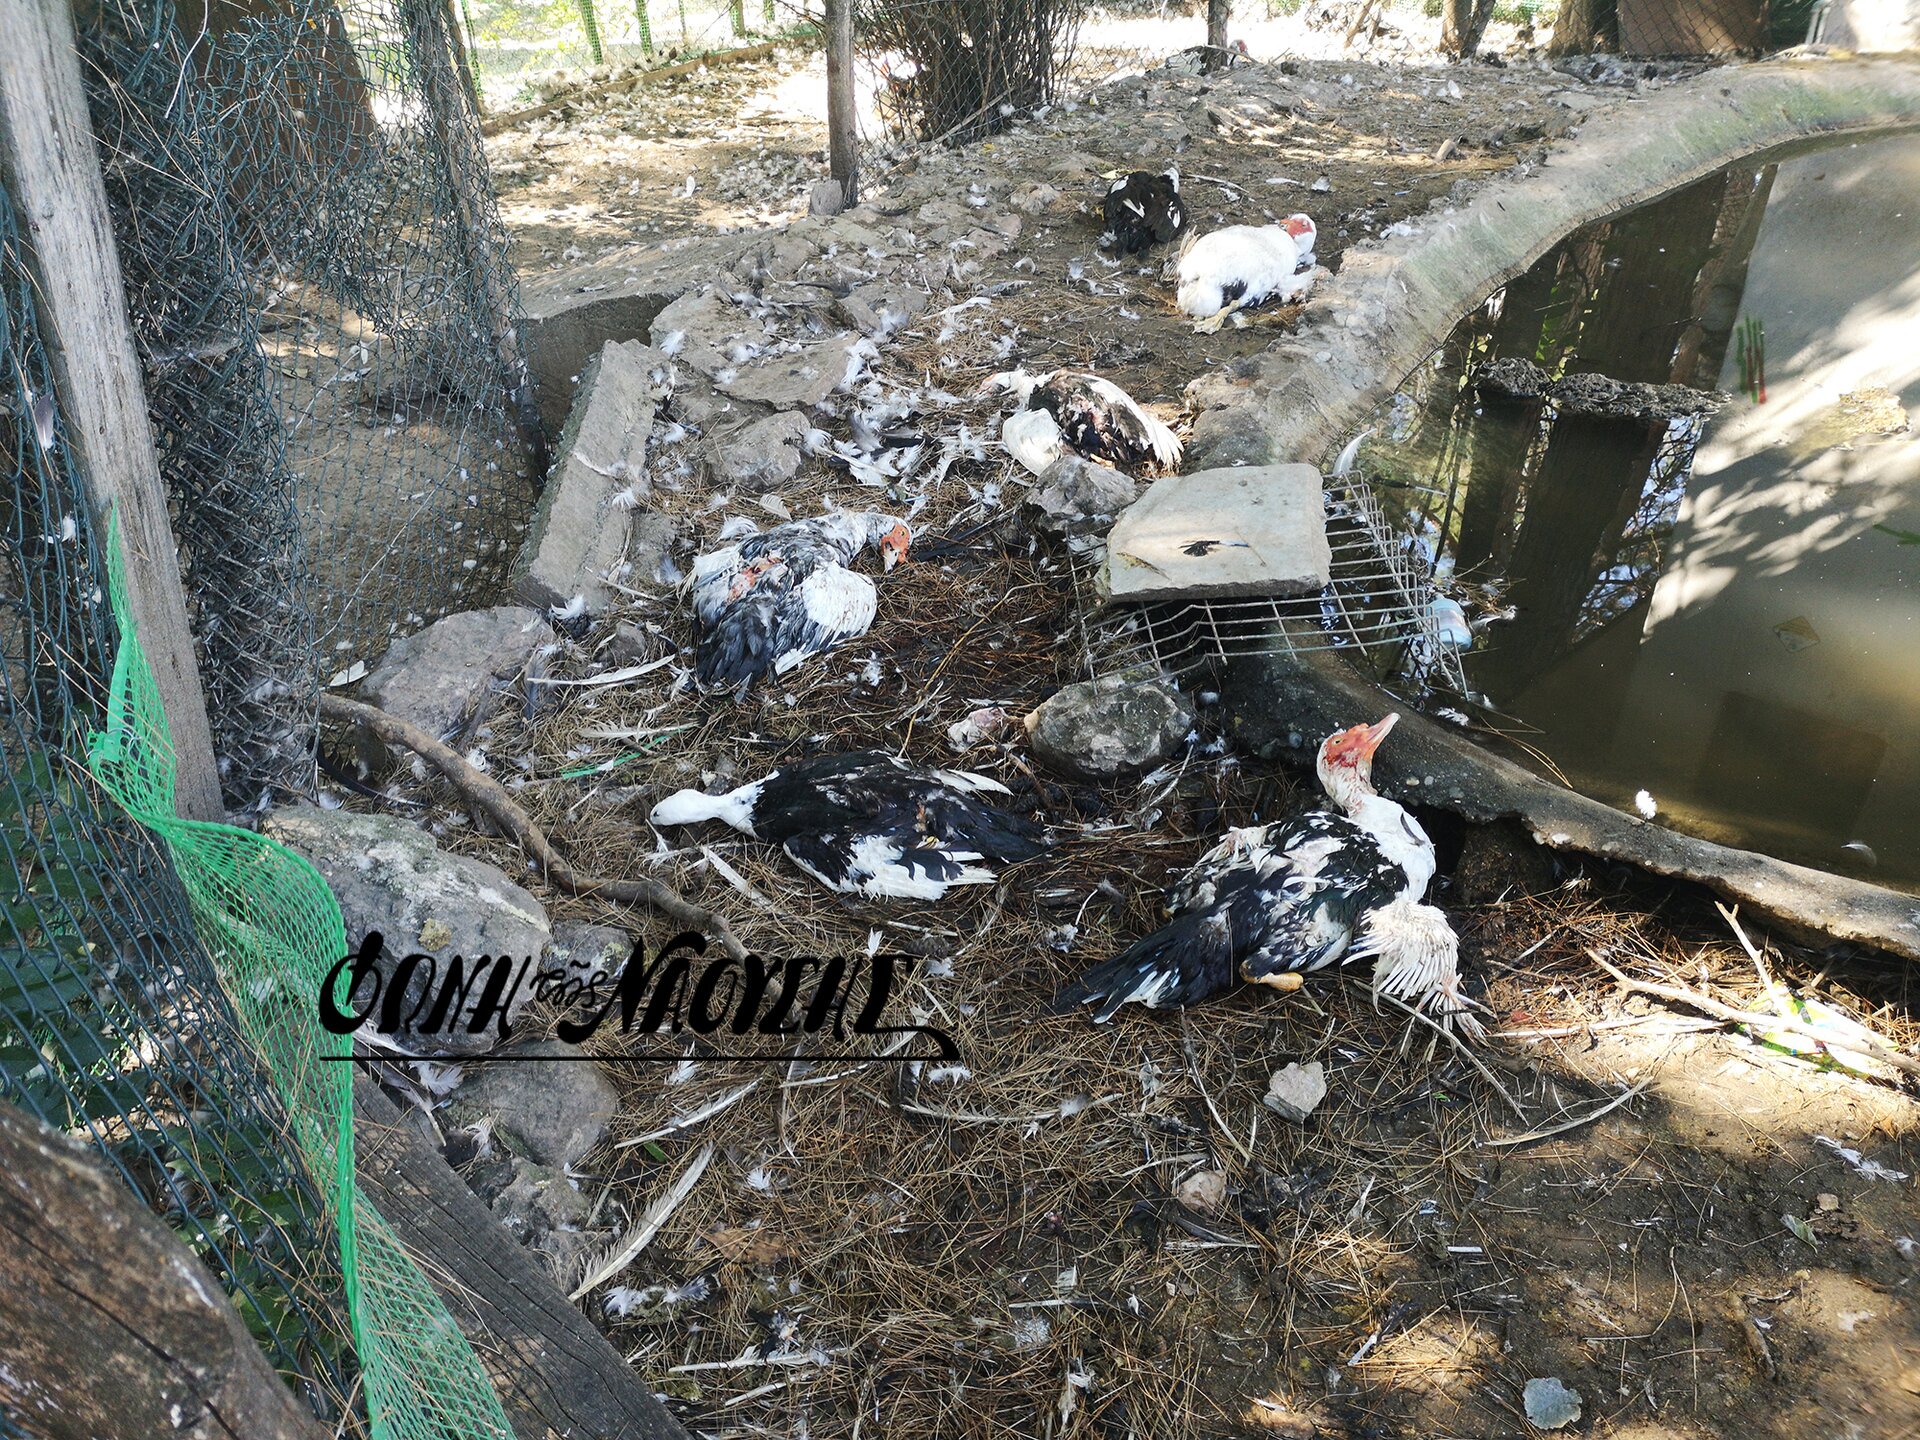 'Αρρωστημένα μυαλά' σκότωσαν χηνόπαπιες με σιδερένιο αντικείμενο στο πάρκο της Νάουσας - Βίντεο